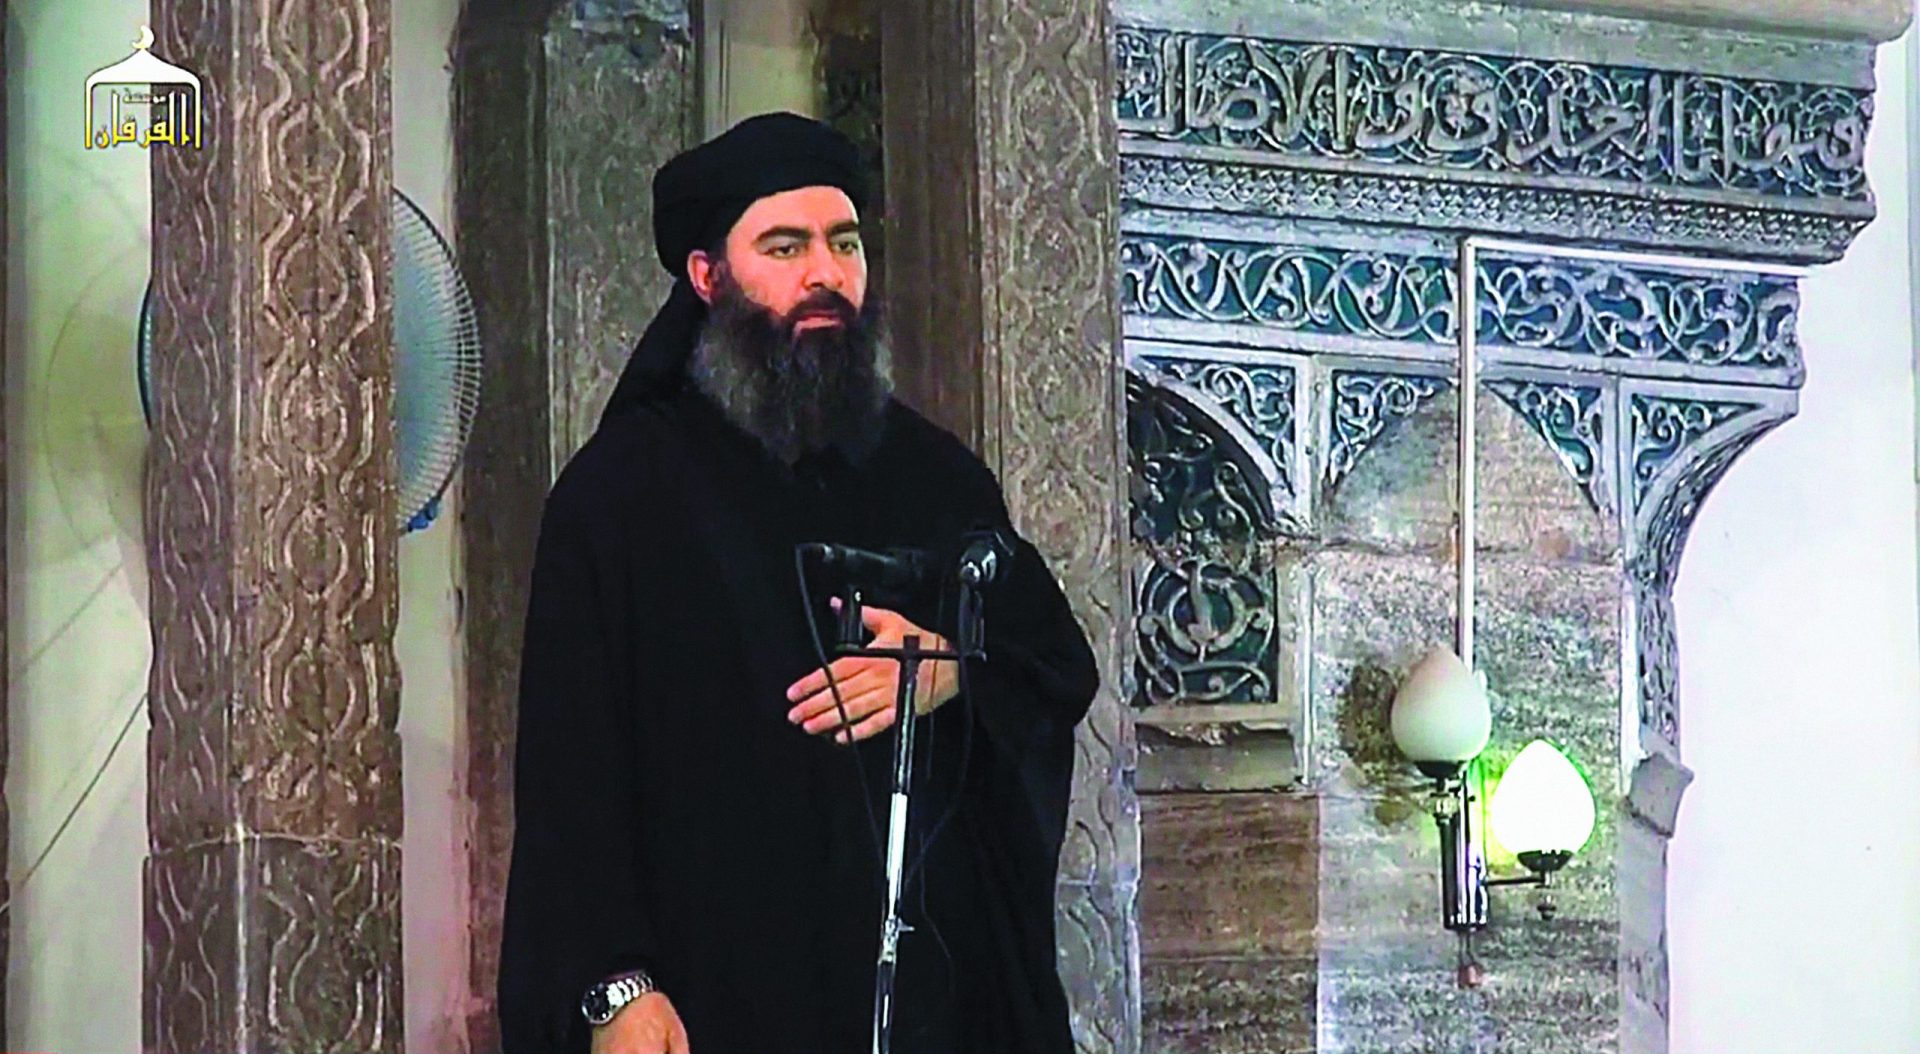 Está o líder do Estado Islâmico realmente morto?